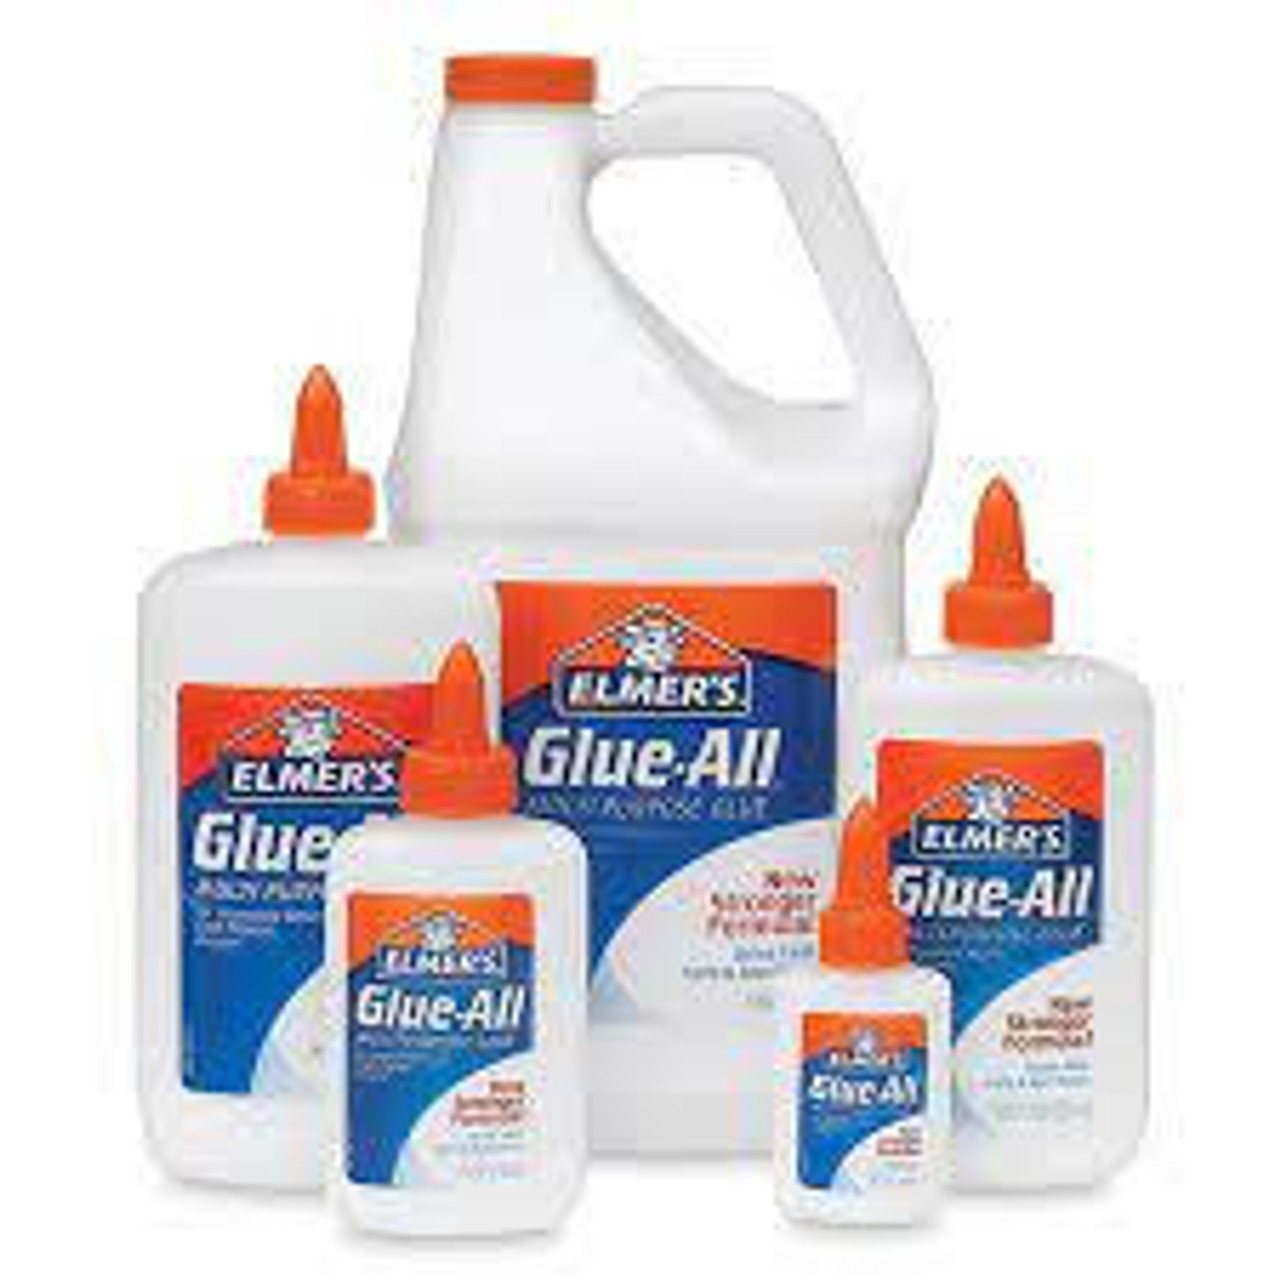 Elmer's Glue-All Multi Purpose Glue, Gallon Bottle E1326